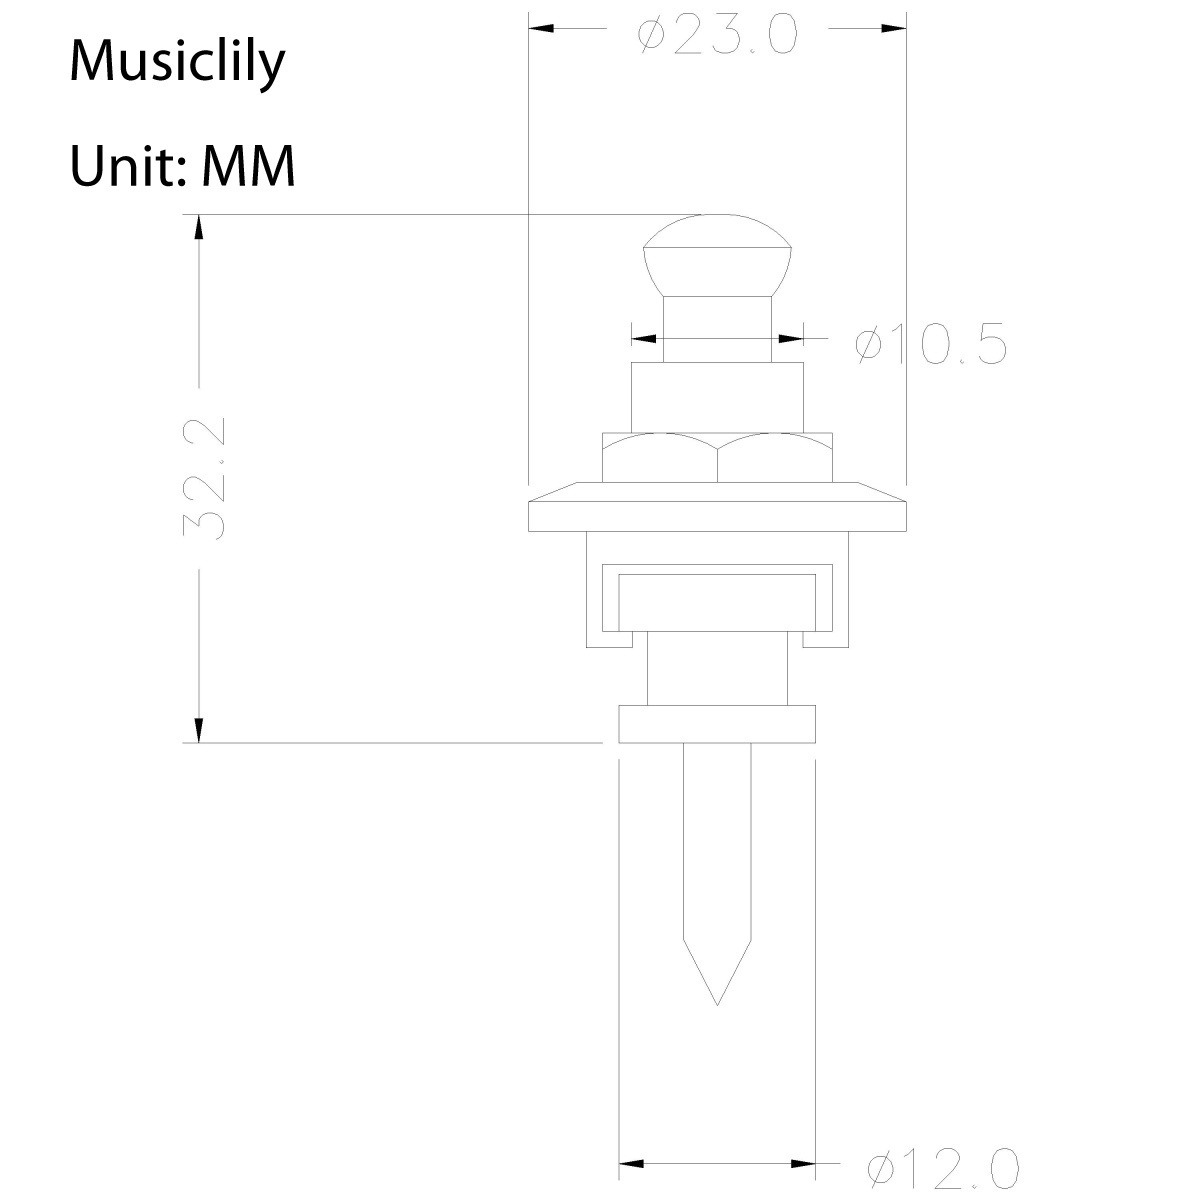 Детальная картинка товара Musiclily M183-2 в магазине Музыкальная Тема